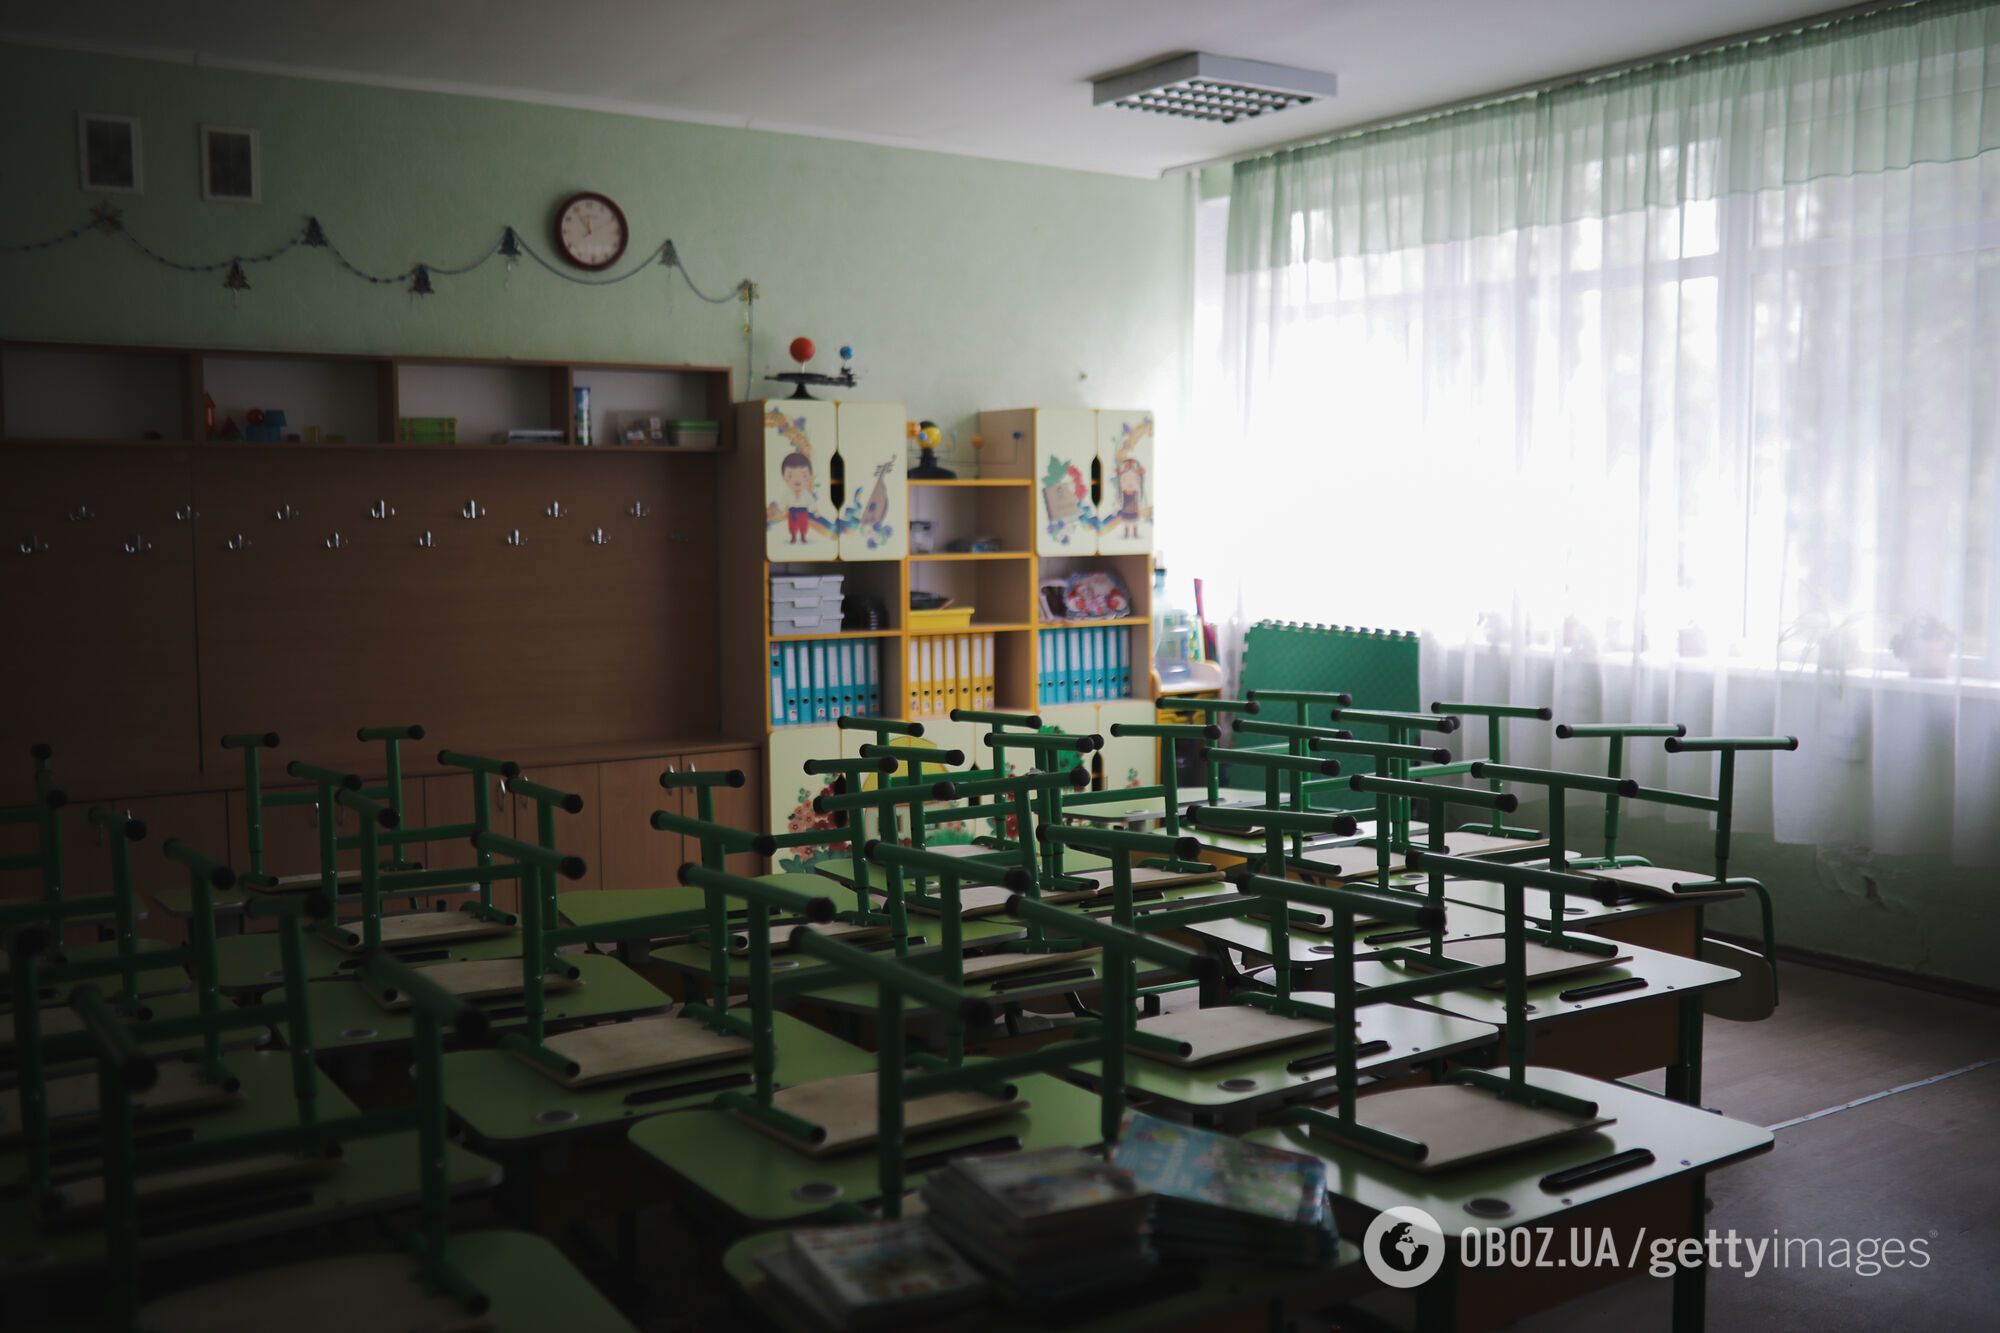 Лісовий: учні та вчителі в Україні повинні якомога швидше повернутися до повноцінного очного навчання